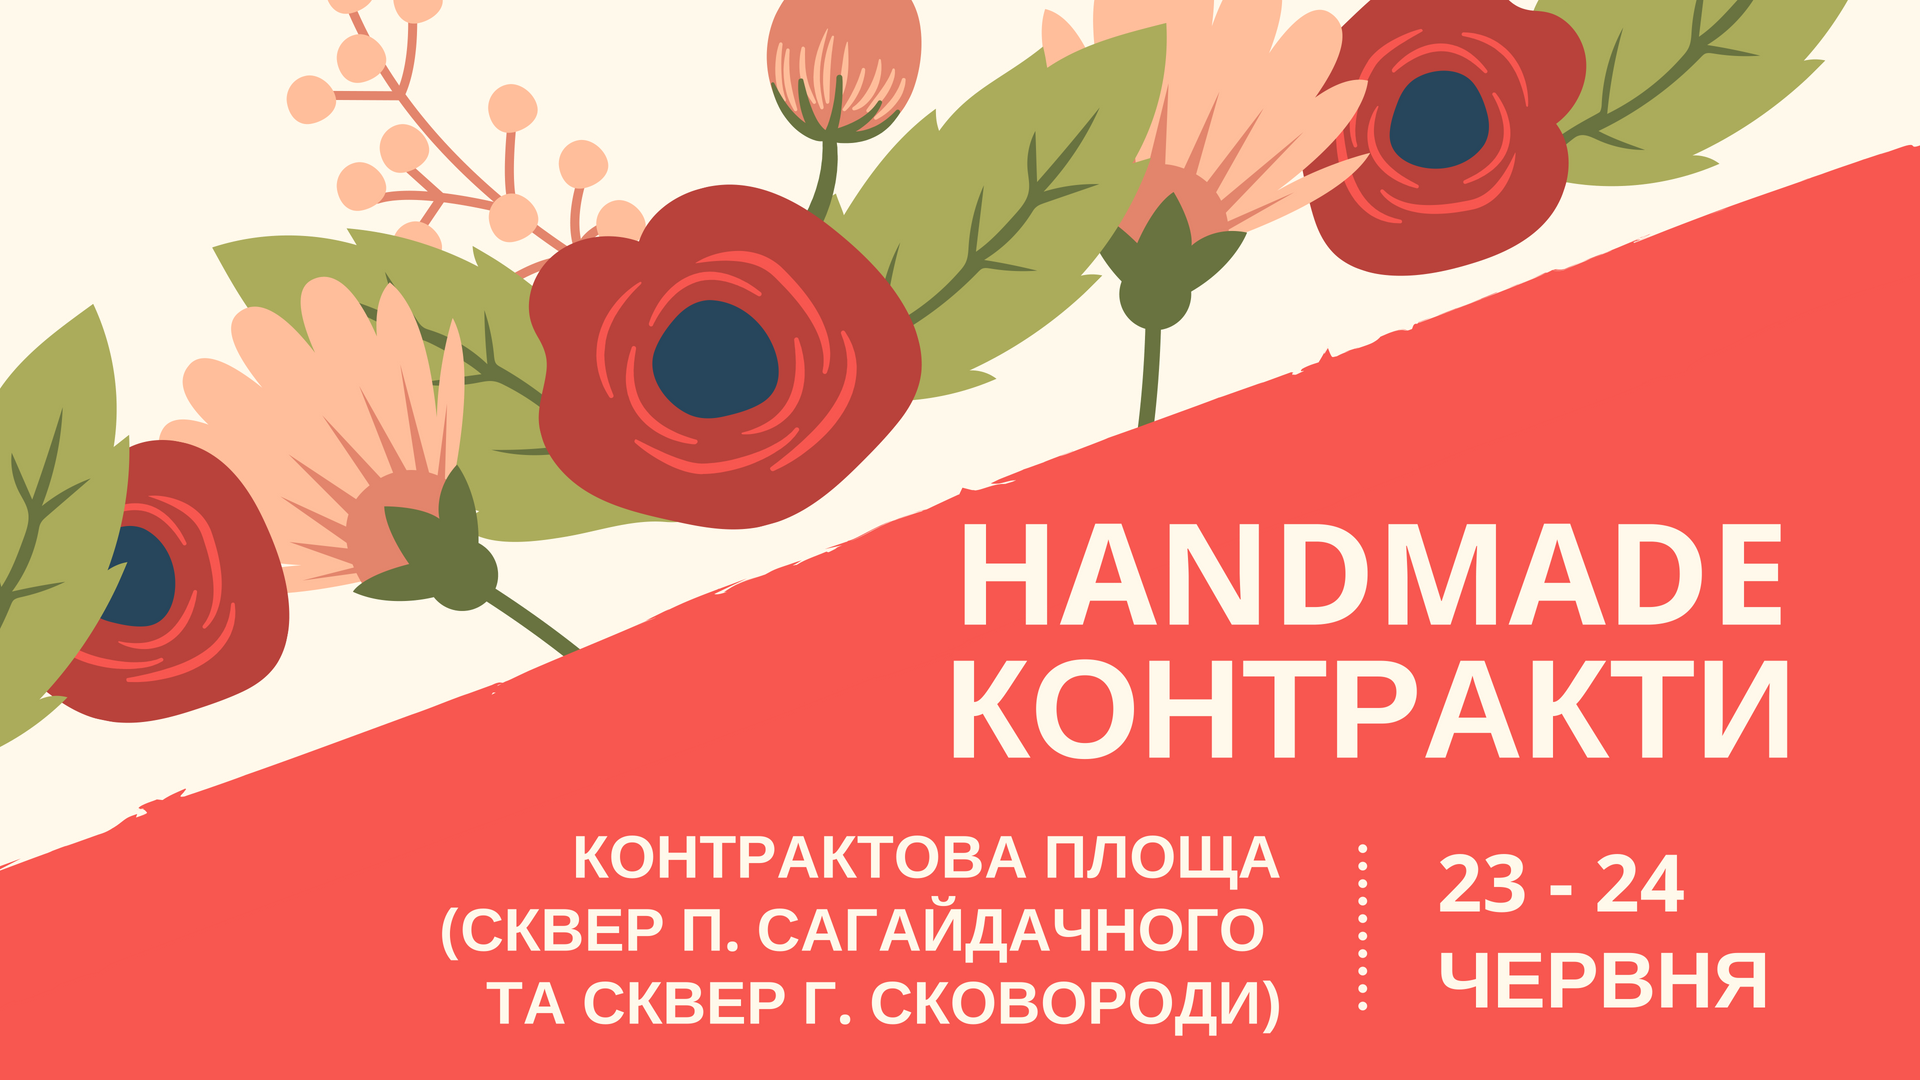 В центре столицы пройдет ярмарка хендмейд продукции "Handmade Контракты"